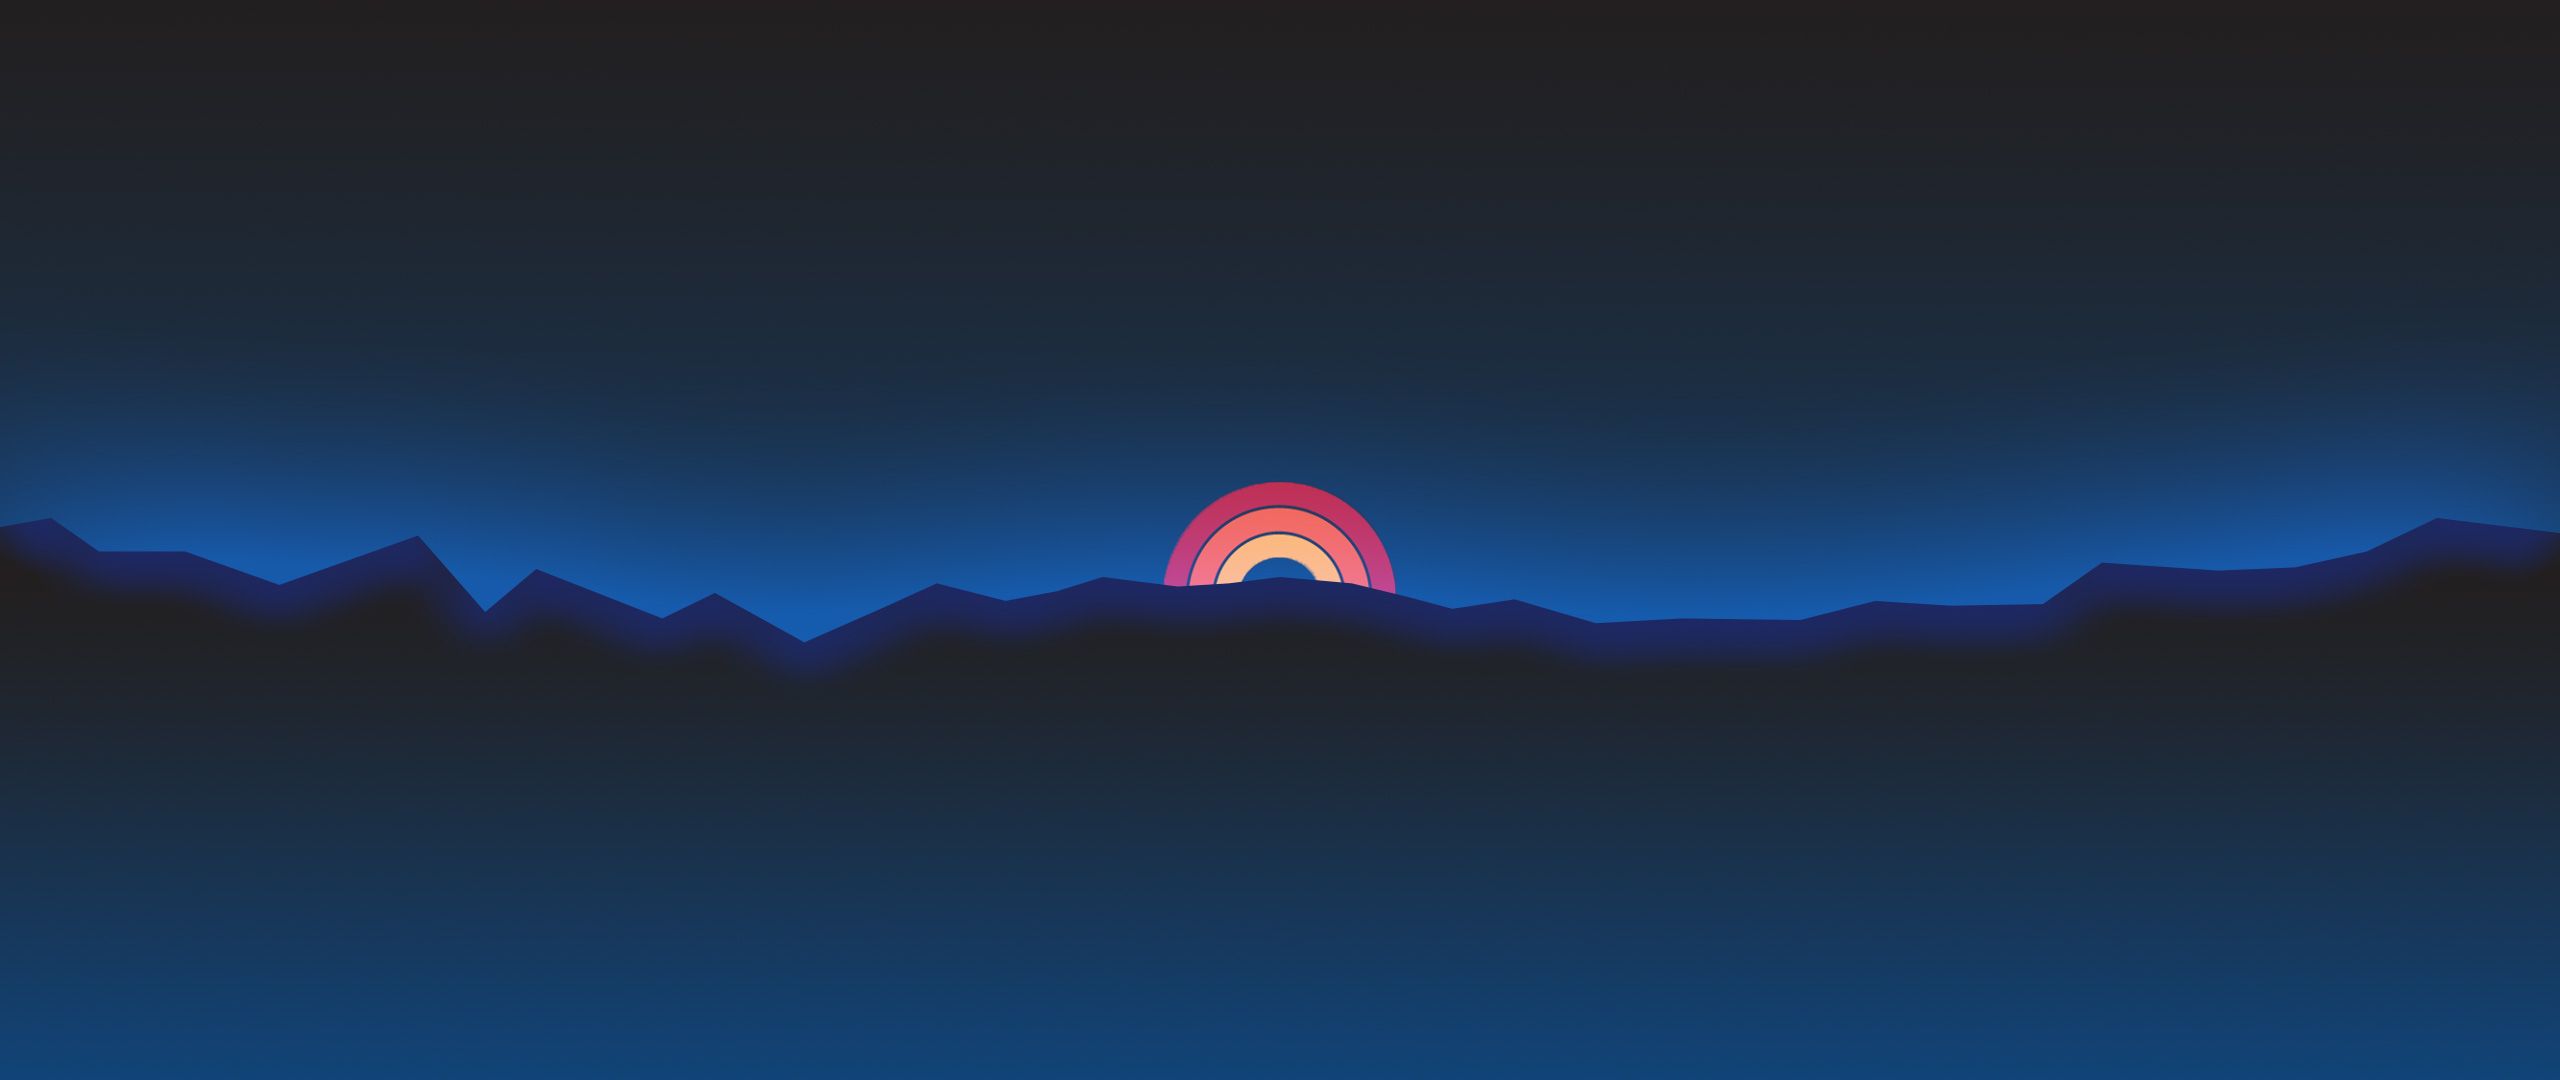 Minimalism Neon Rainbow Sunset Retro Style, HD Artist, 4k